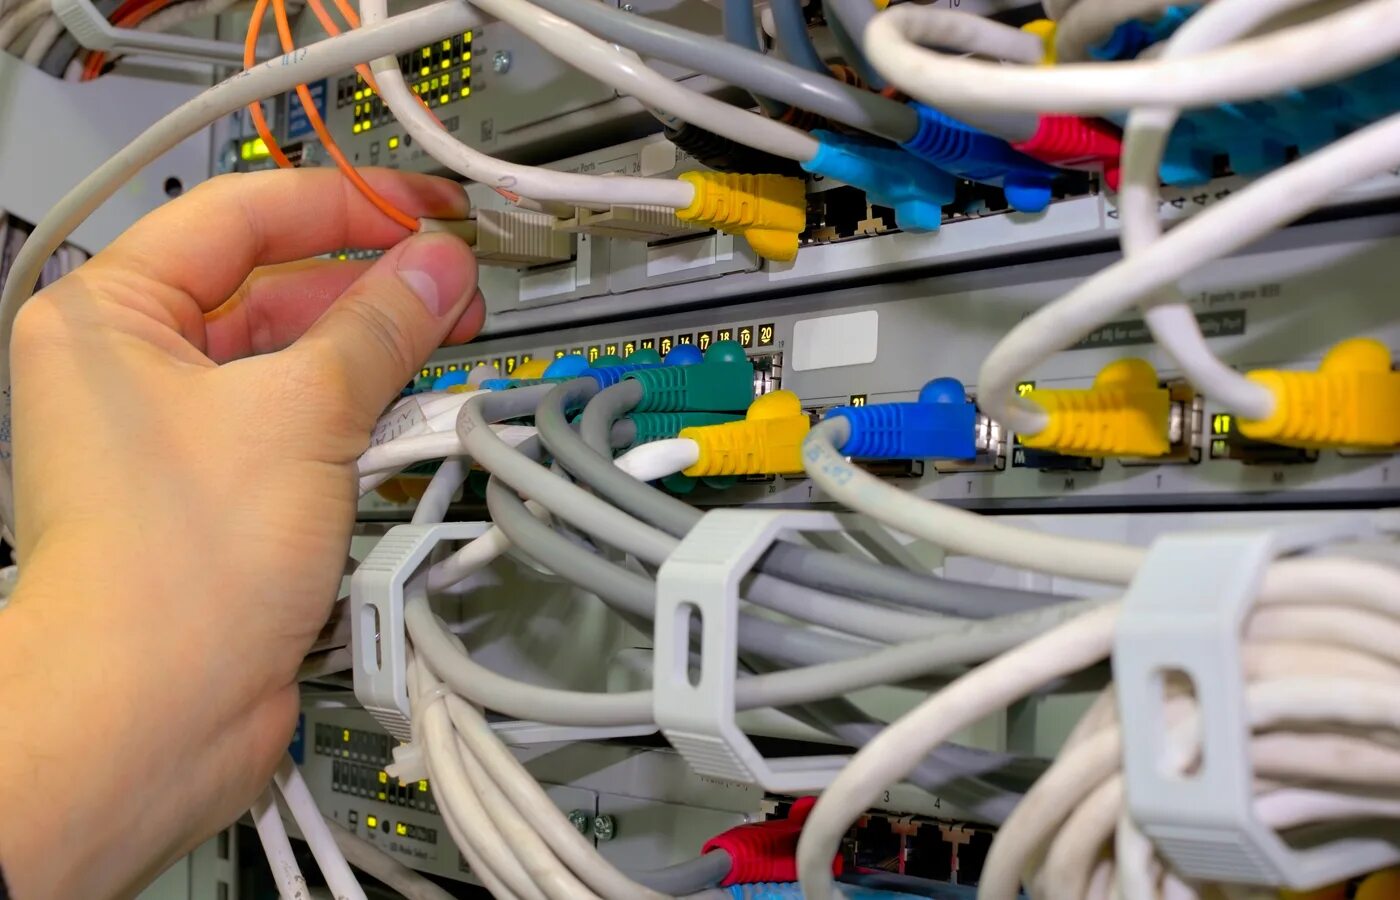 Следующее проверьте сетевые кабели. Проверка сетевого кабеля. Прибор для проверки локальной сети. Сетевой инженер. Стенд для проверки сетевых кабелей.